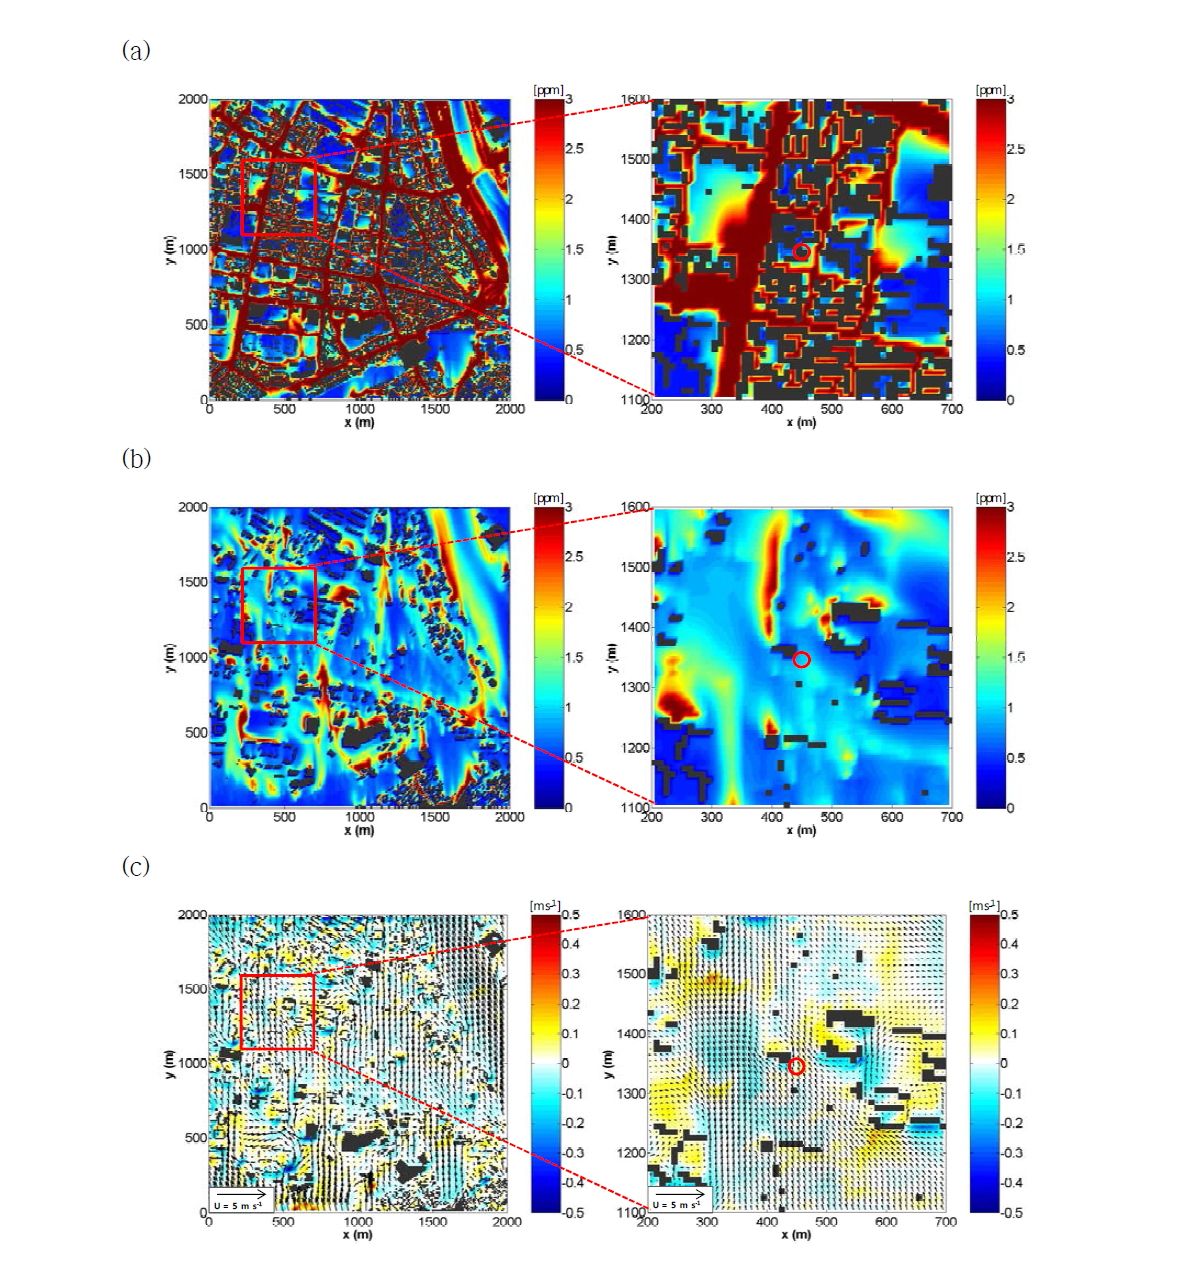 2014년 2월 25일 11시에 대한 서울시 영등포구 지역의 (a) 지표 CO 농도장, (b) 측정소 고도 CO 농도장, (c) 측정소 고도 바람 벡터장[빨강색 사각형 - 측정소 위치 영역, (c)의 색깔 - 연직 성분 속도]